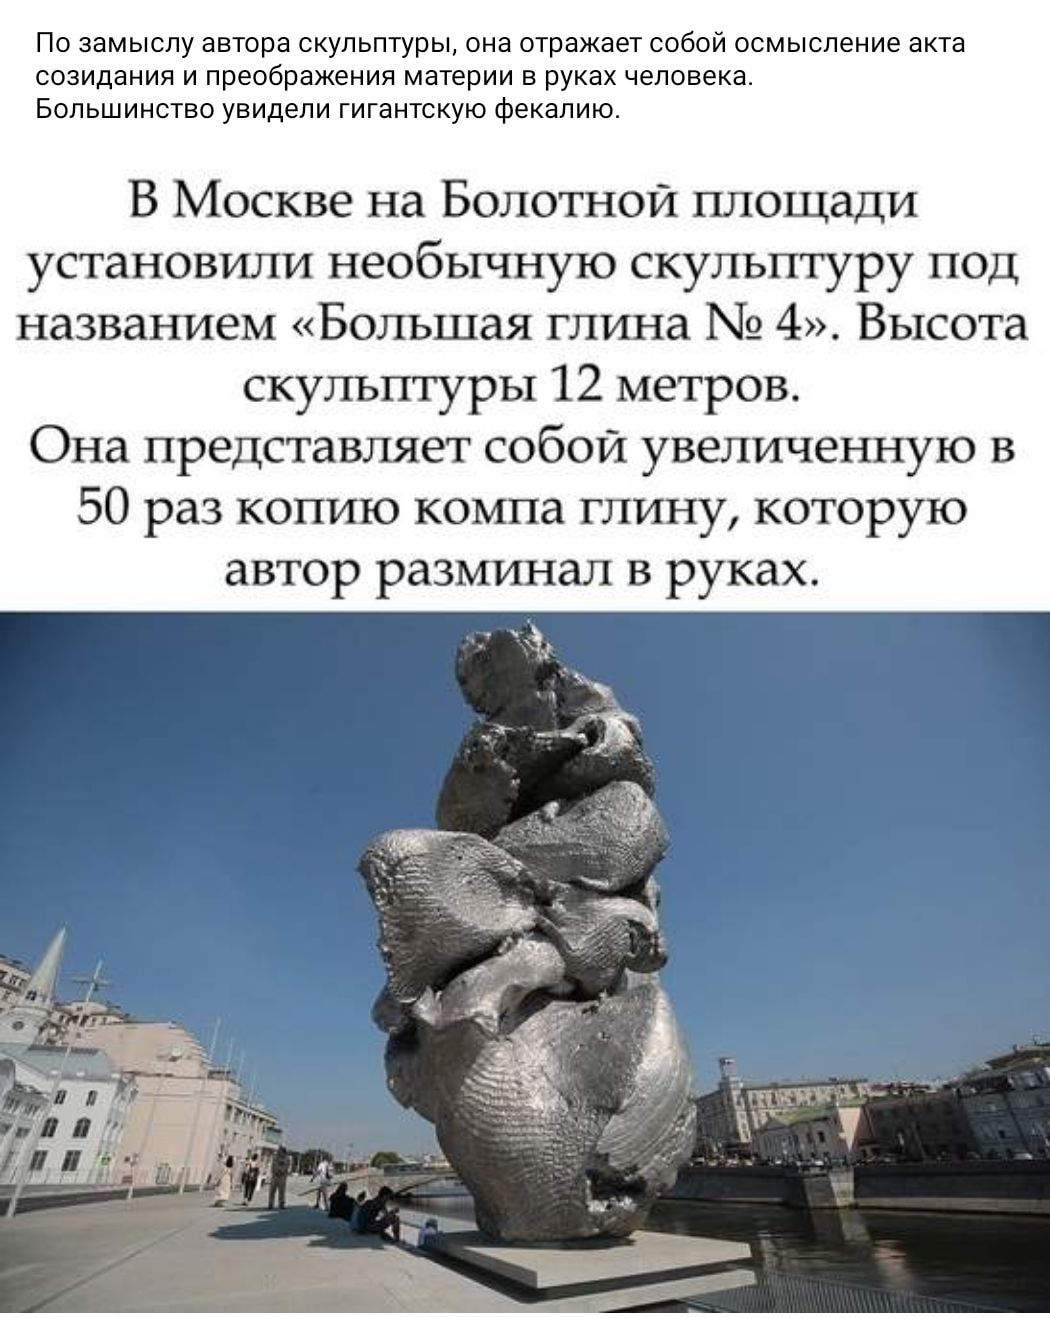 большая глина скульптура в москве